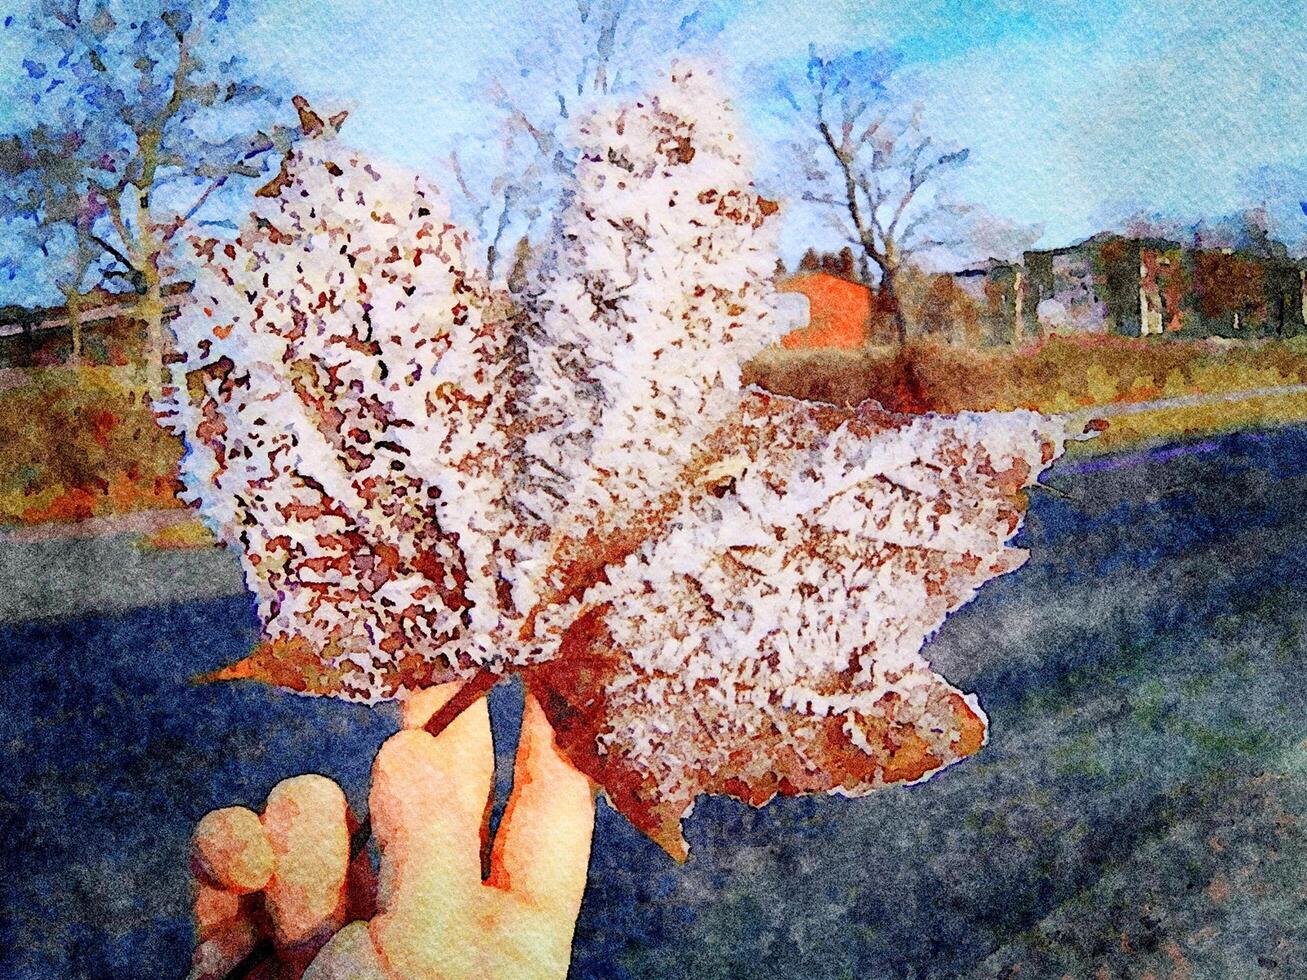 numérique aquarelle style de une main en portant une feuille couvert dans neige cristaux photo